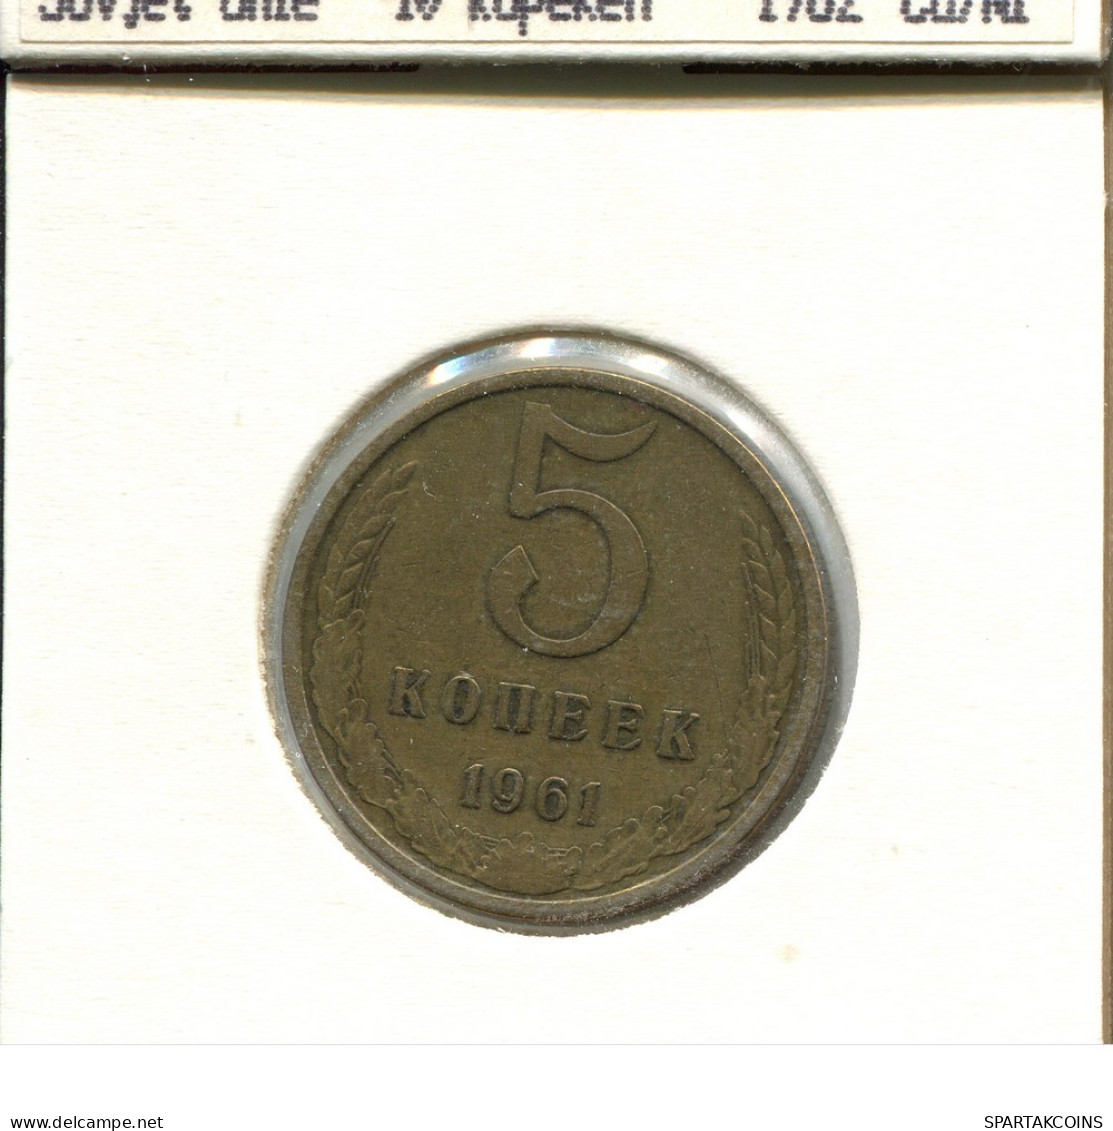 5 KOPEKS 1961 RUSSIA USSR Coin #AS659.U.A - Rusland